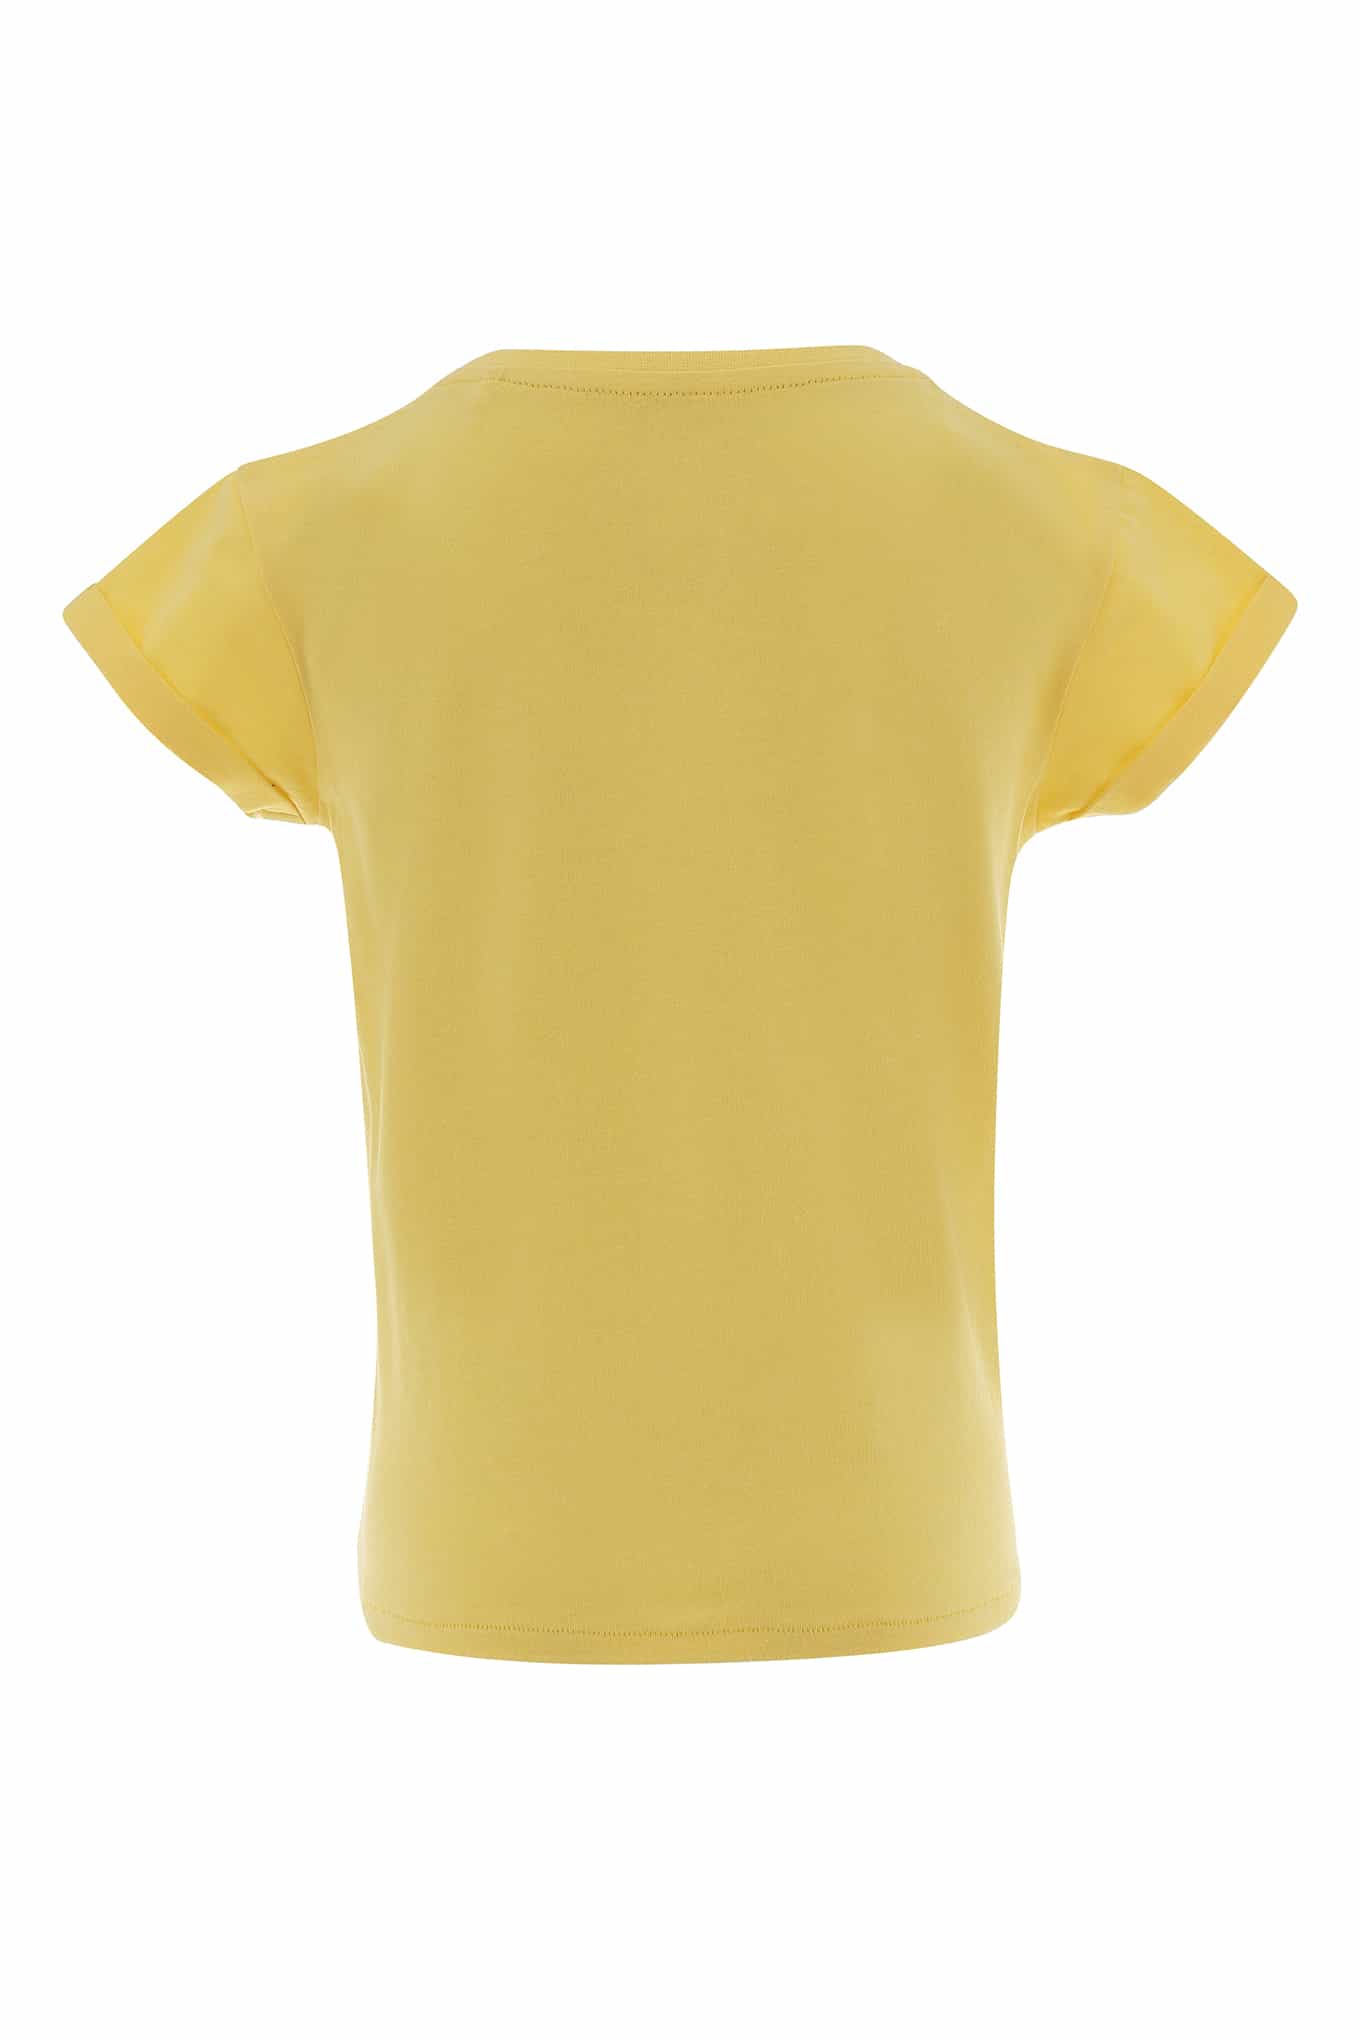 T-Shirt Light Yellow Sport Girl